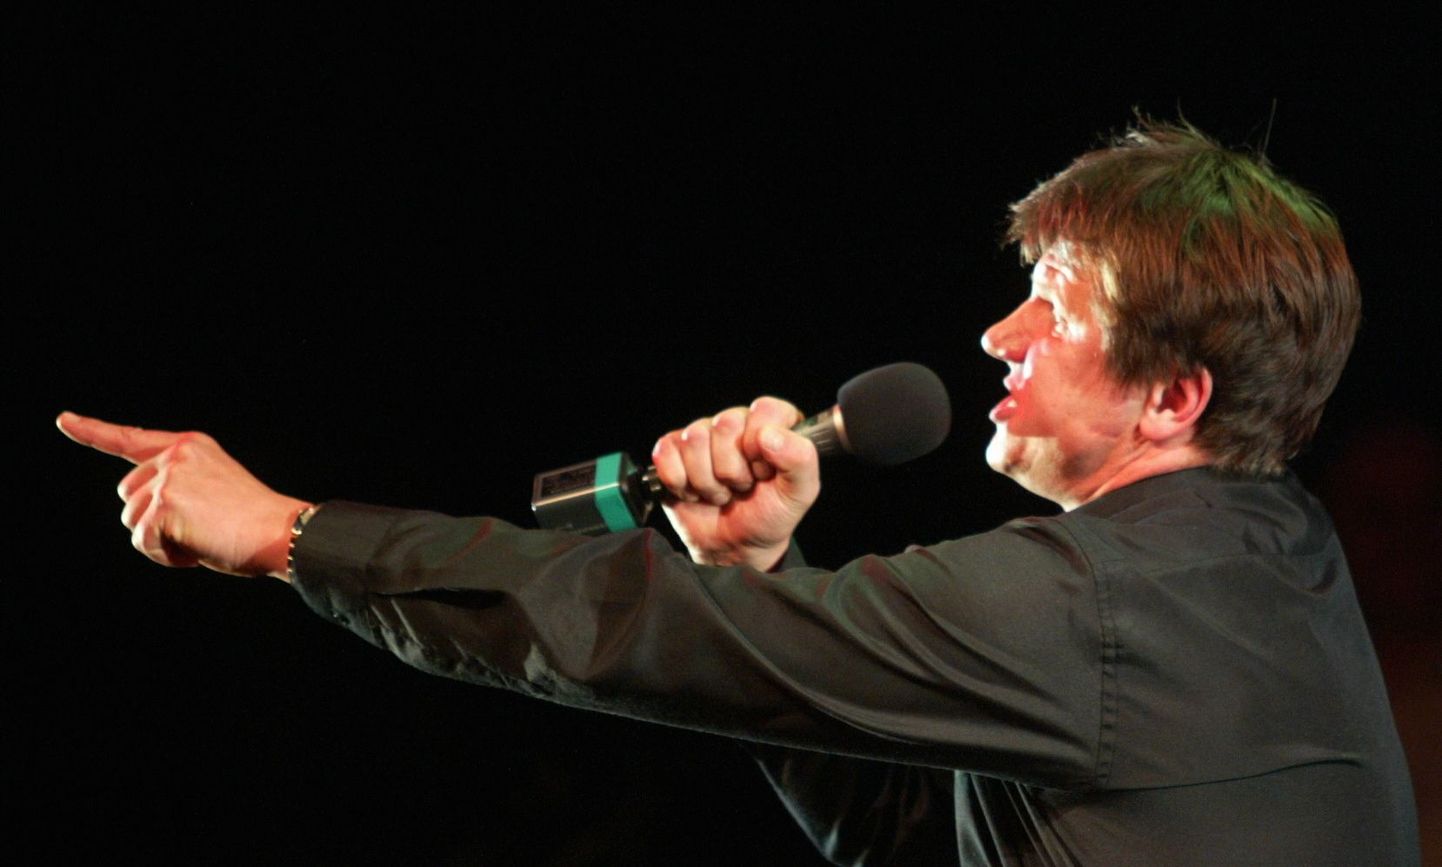 Hannes Kaljujärv on laulnud kõikidel Maarja küla heategevuskontsertidel «Kuula, palun!», pilt aastast 2005. Seekord tuleb ta koos teiste näitlejatega jällegi lavale.